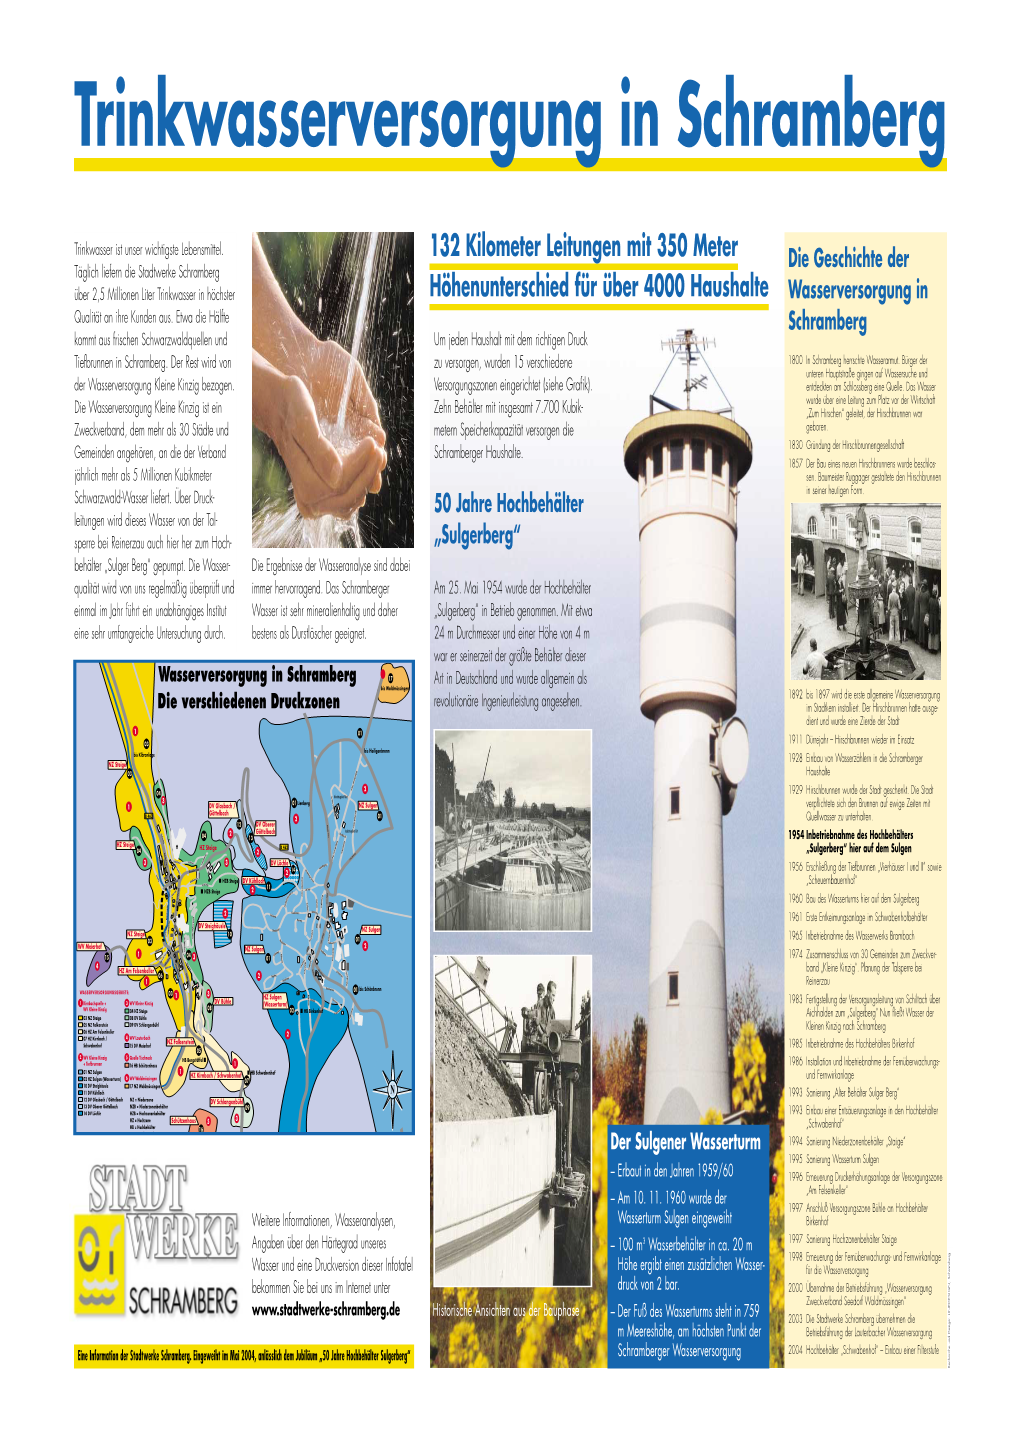 Wasserturm Sulgen – Erbaut in Den Jahren 1959/60 1996 Erneuerung Druckerhöhungsanlage Der Versorgungszone – Am 10